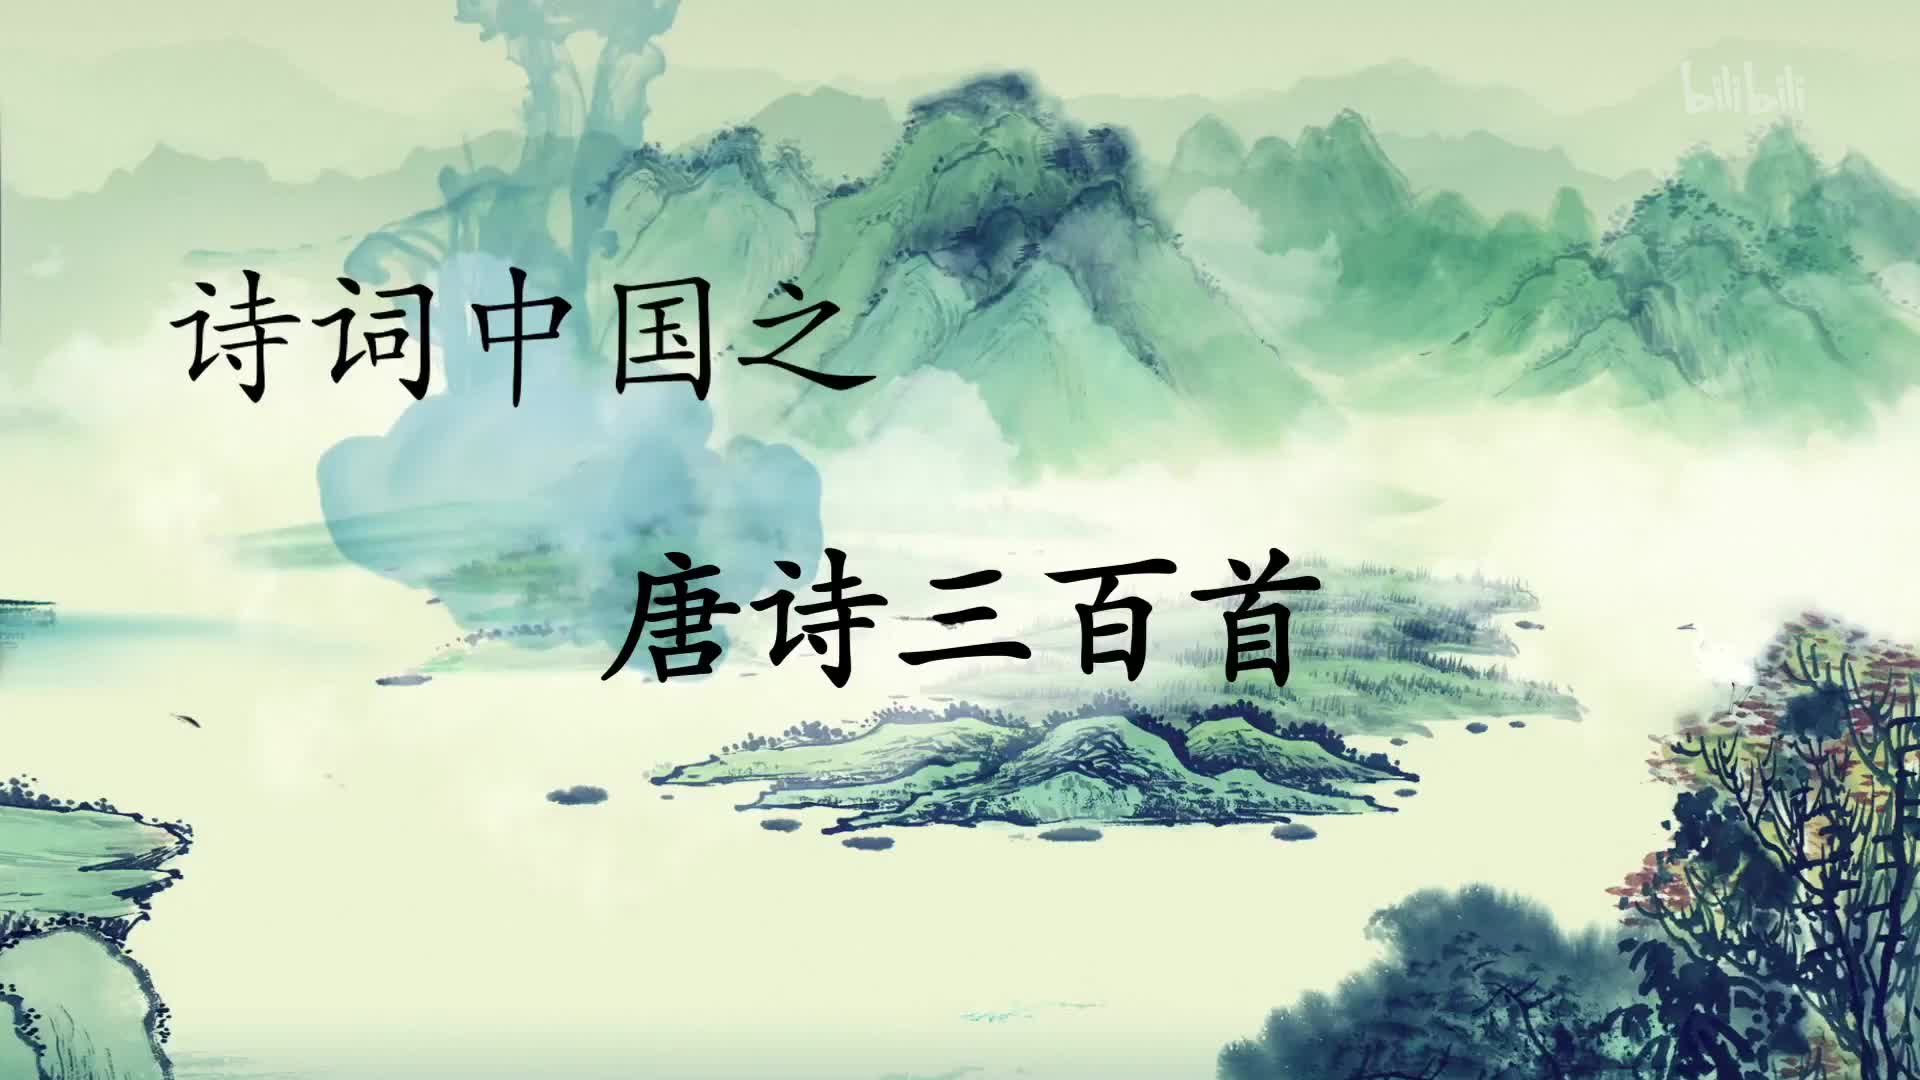 【纪录片】《诗词中国》-唐诗三百首